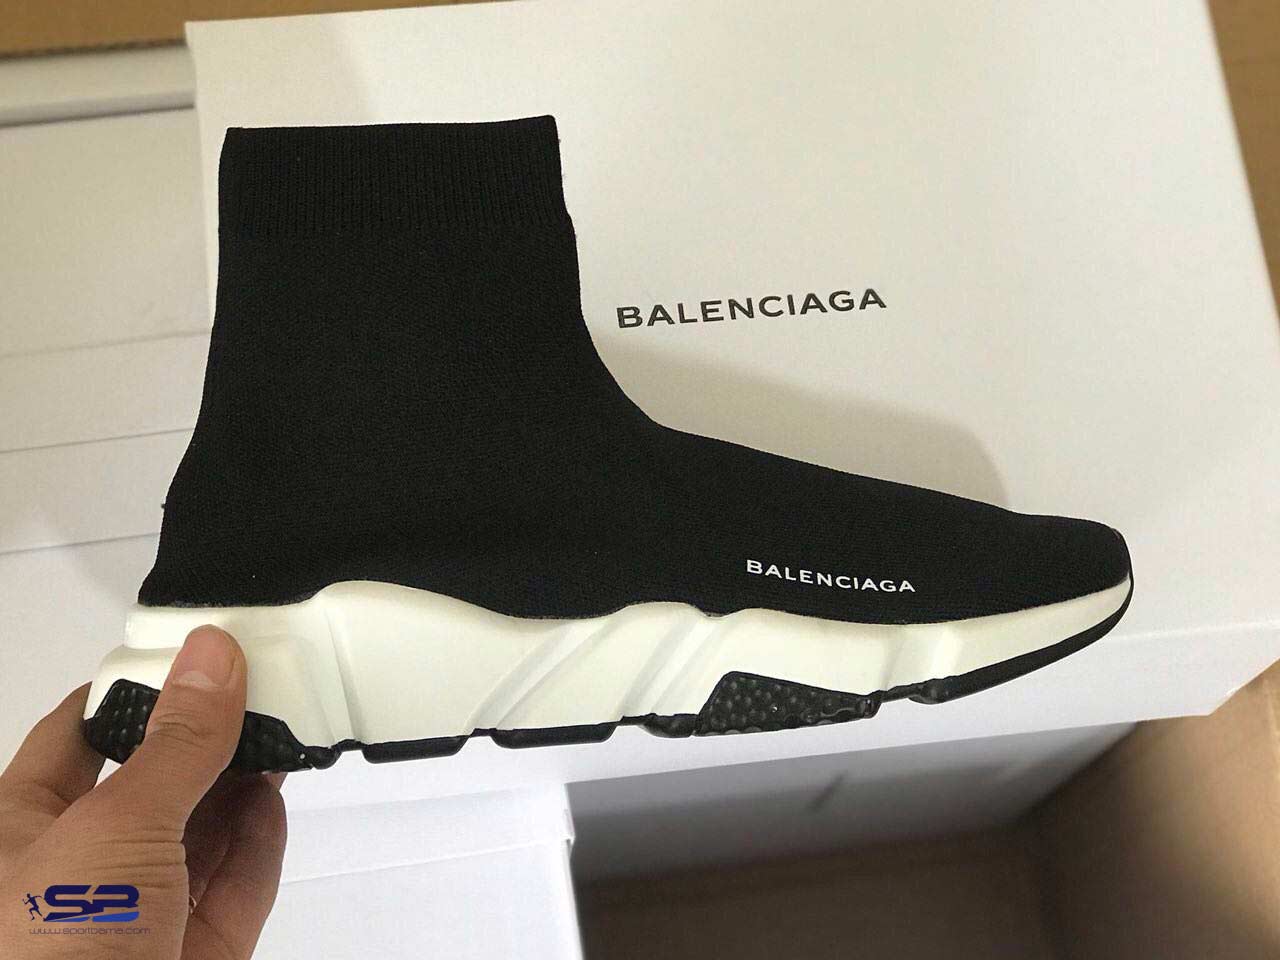  خرید  کفش رانینگ  بالنسیاگا مشکی سفید     Balenciaga Ranning Shoes 